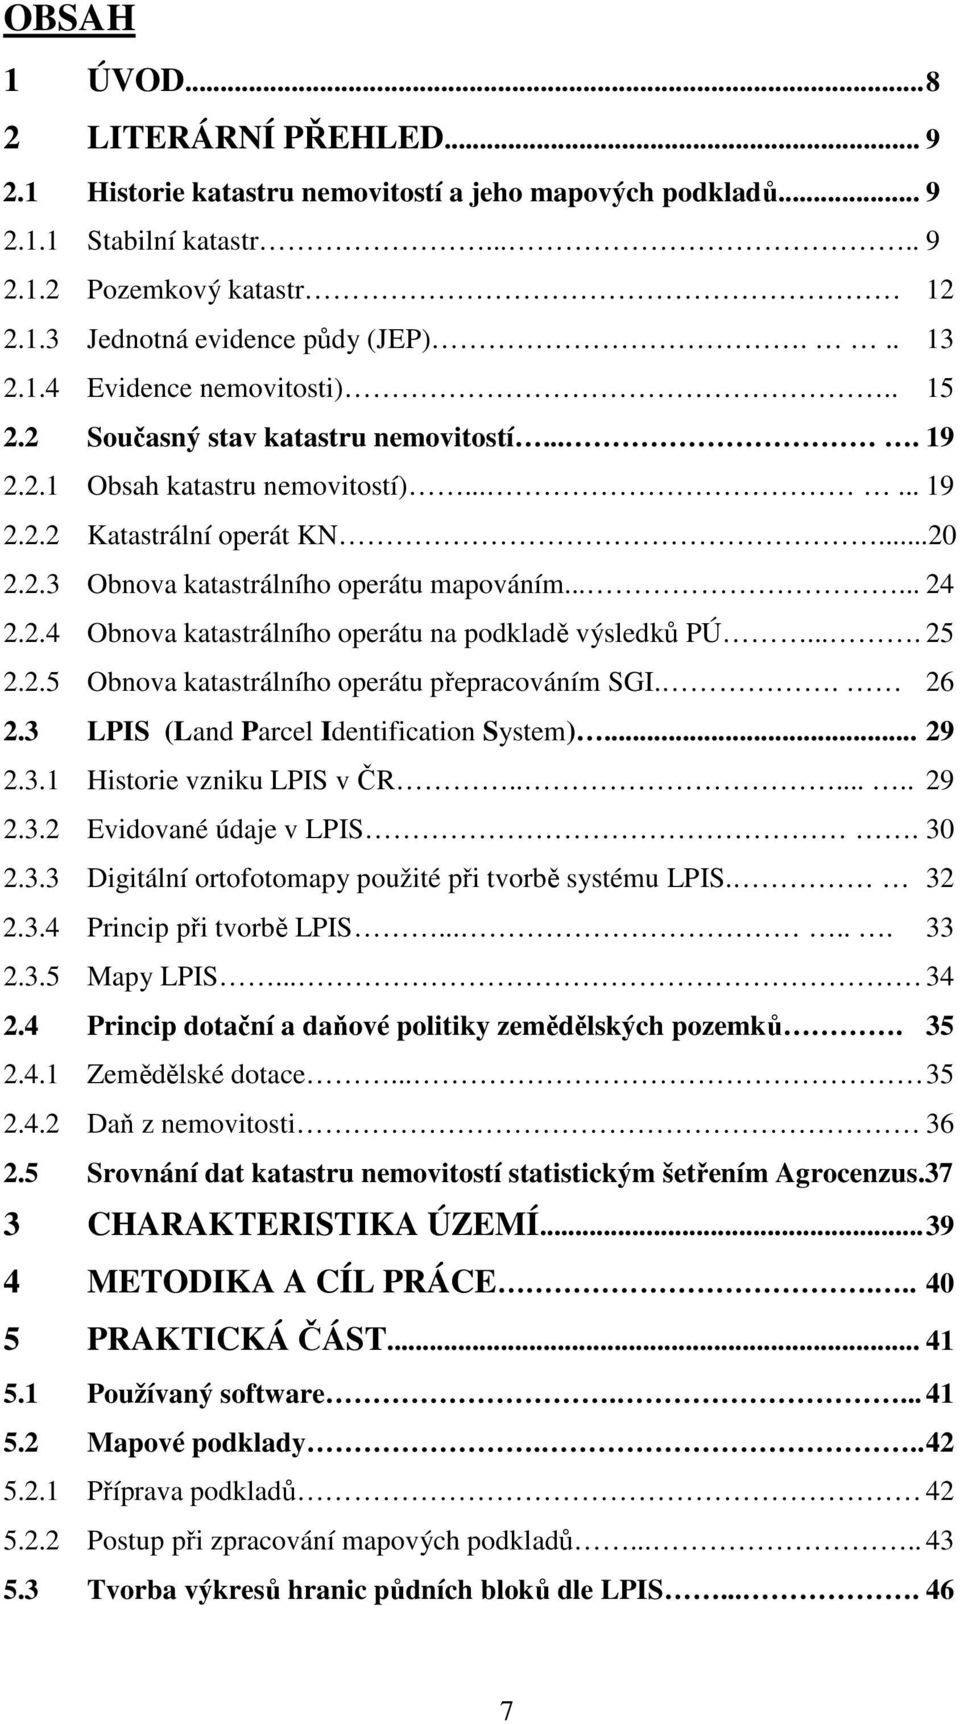 ..... 24 2.2.4 Obnova katastrálního operátu na podkladě výsledků PÚ.... 25 2.2.5 Obnova katastrálního operátu přepracováním SGI.. 26 2.3 LPIS (Land Parcel Identification System)... 29 2.3.1 Historie vzniku LPIS v ČR.